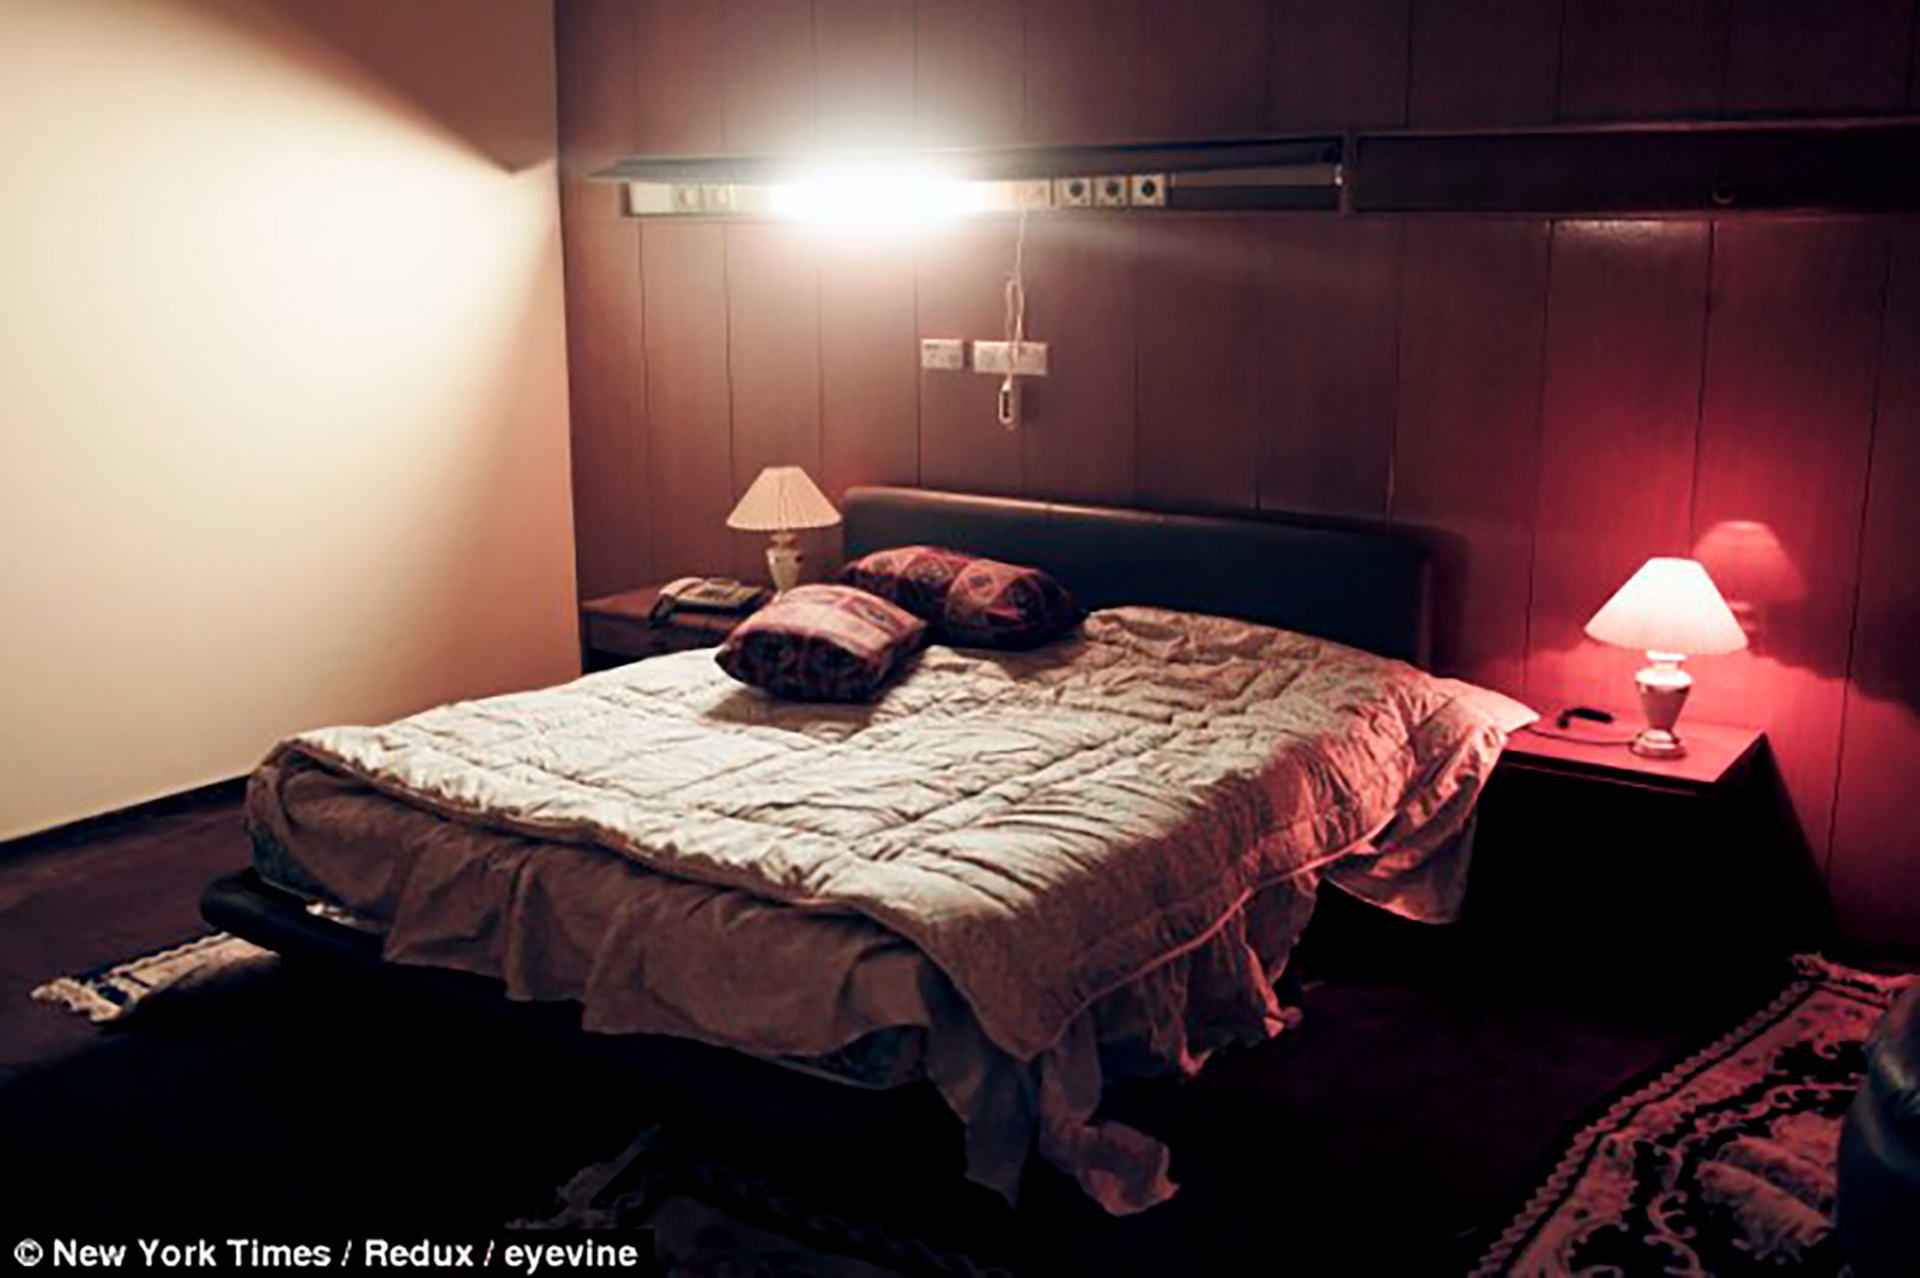 La cama donde el dictador libio llevaba a cabo sus violaciones (New York Times)